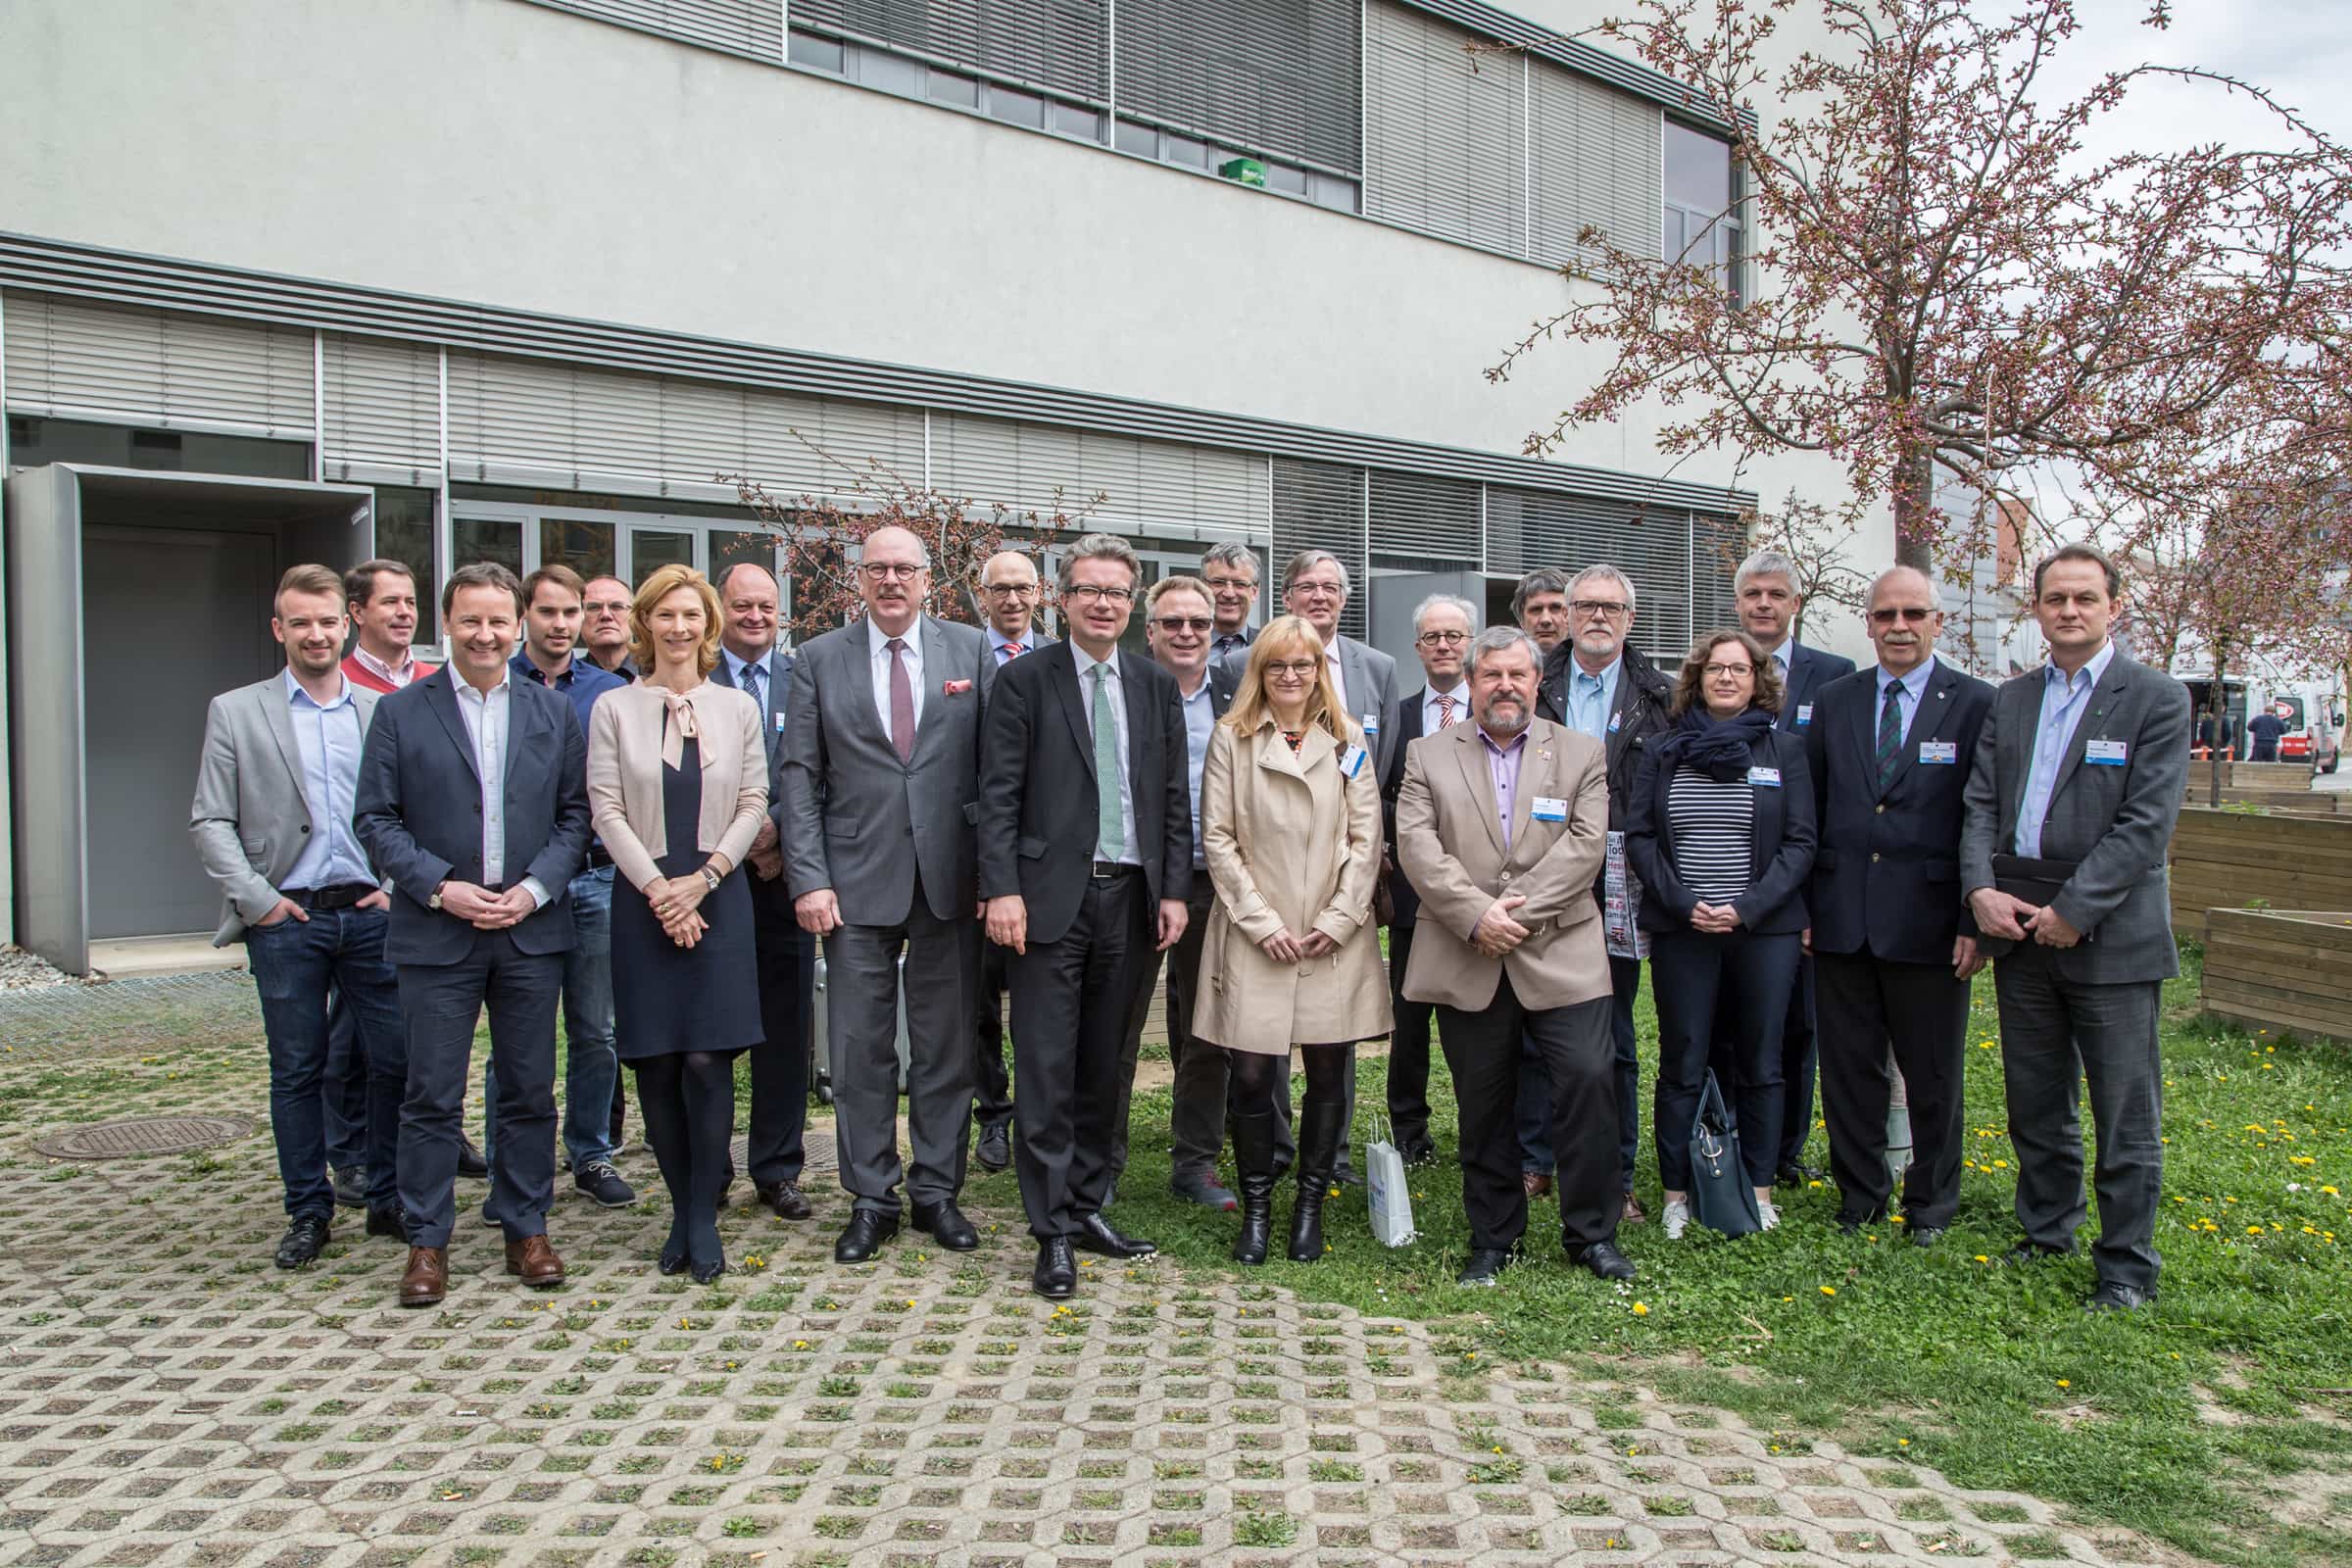 Vertreterinnen und Vertreter der hessischen Landesregierung, des Landtags sowie des Gesundheits- und Hochschulwesens holten sich beim Besuch der FH JOANNEUM Input zum Thema Gesundheitsinformatik.